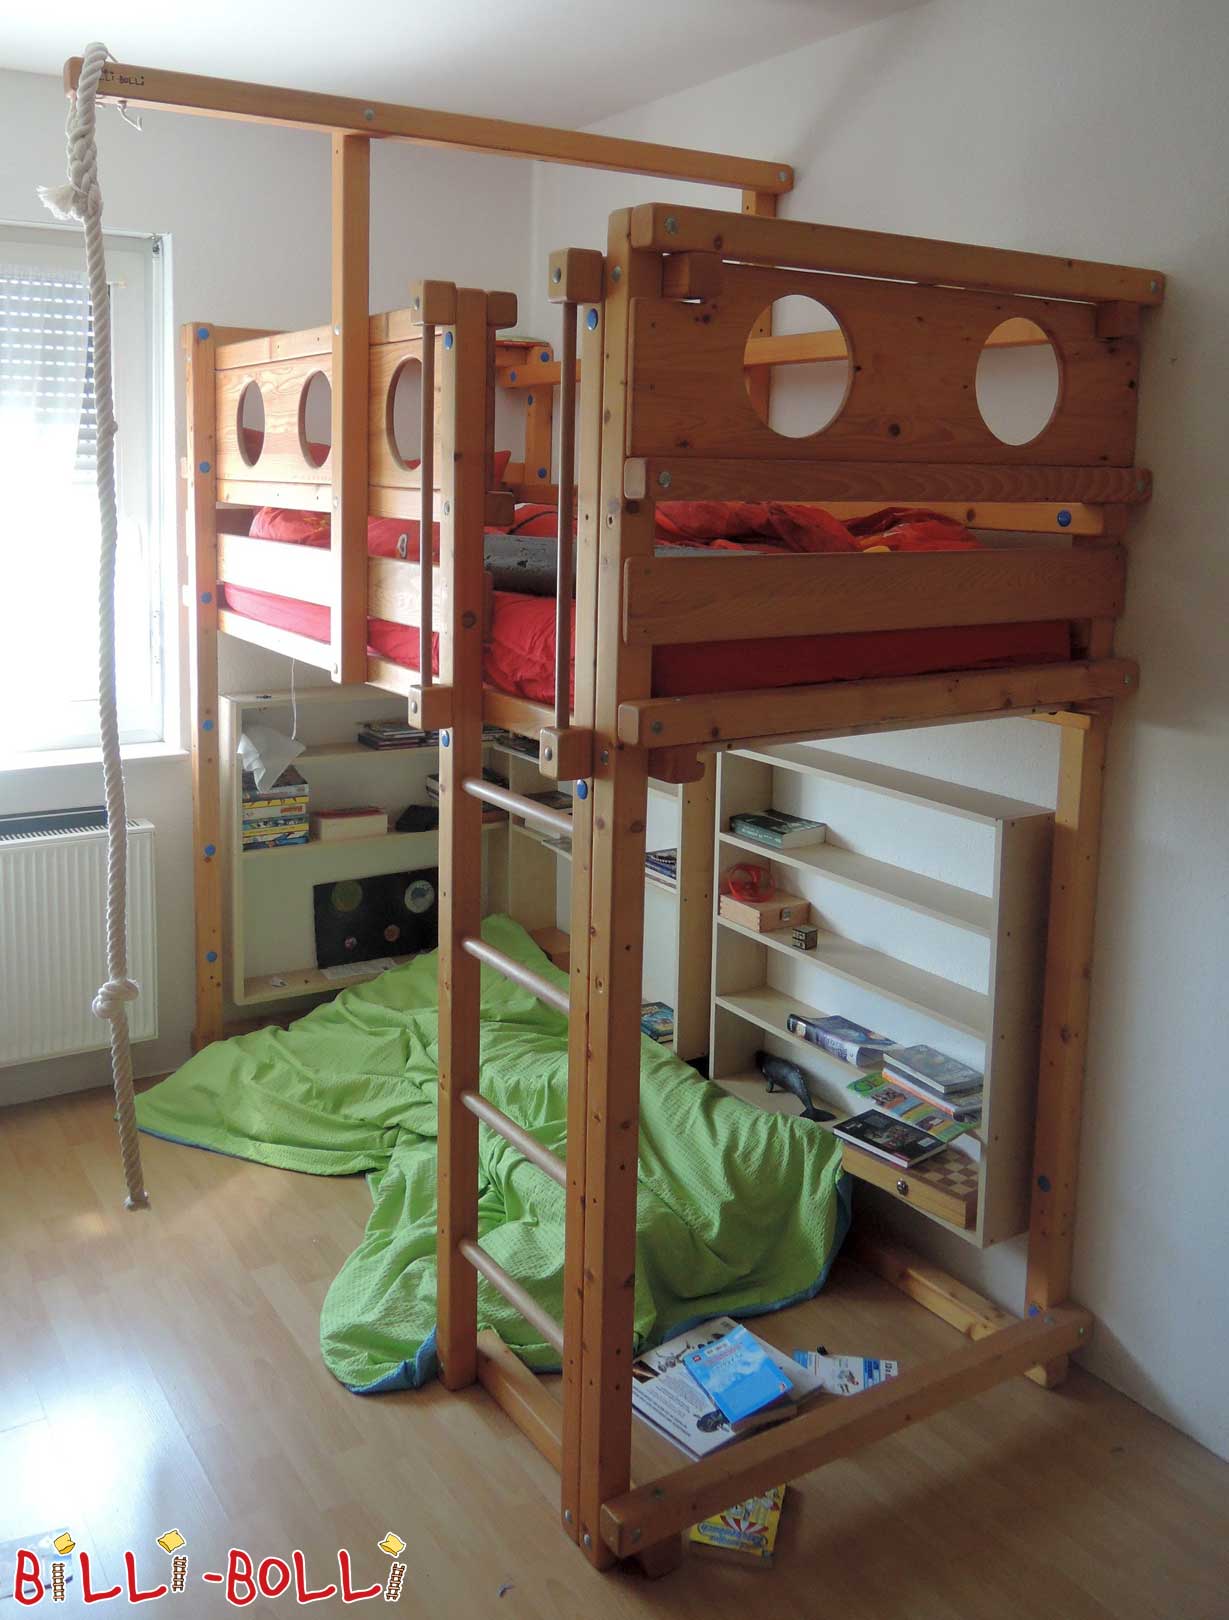 बच्चे के साथ बढ़ रहा मचान बिस्तर, 90 x 200 सेमी, तेल से सना हुआ लच्छेदार स्प्रूस (कोटि: मचान बिस्तर का इस्तेमाल किया)